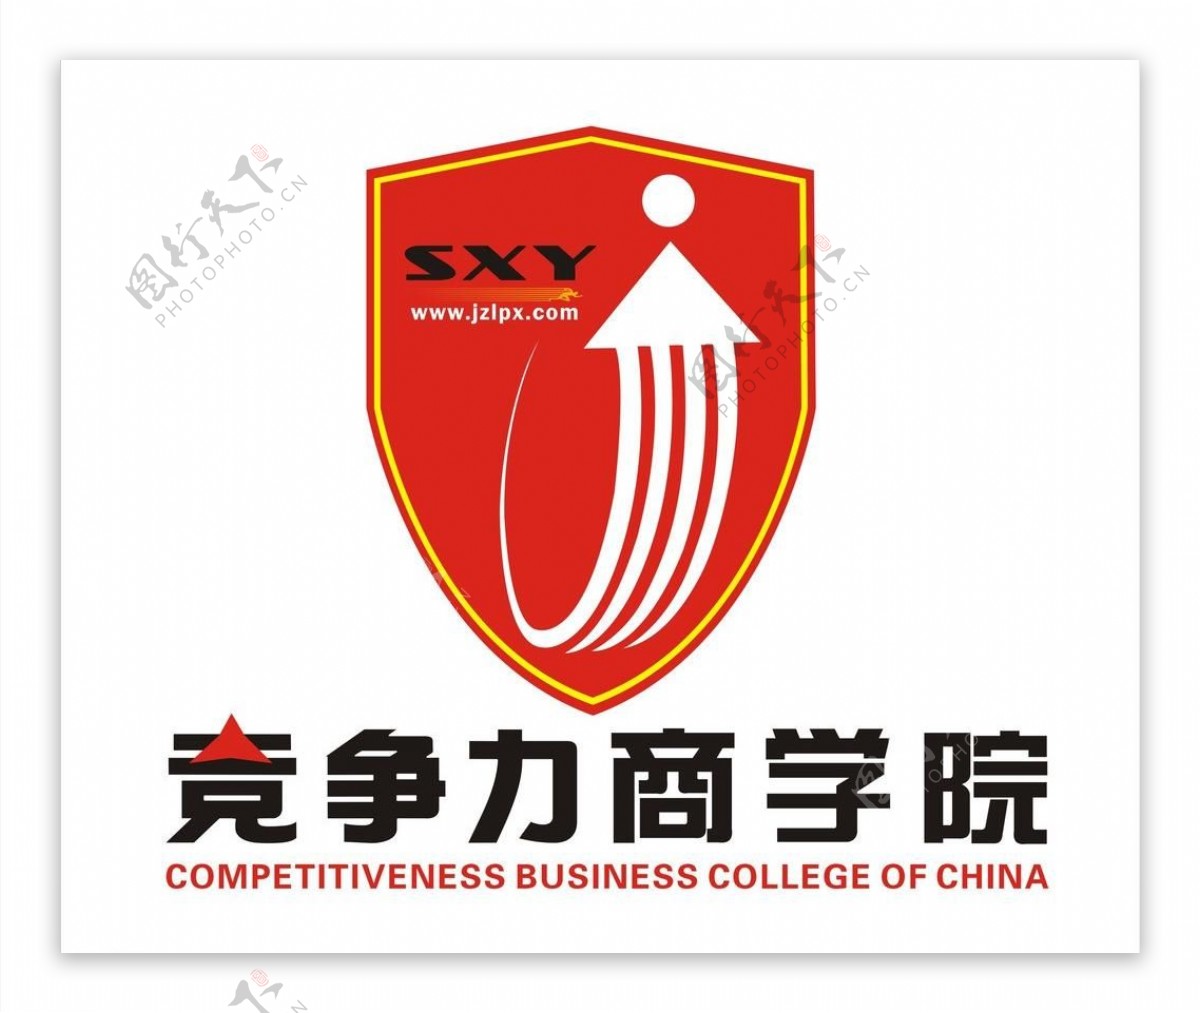 竞争力商学院logo图片